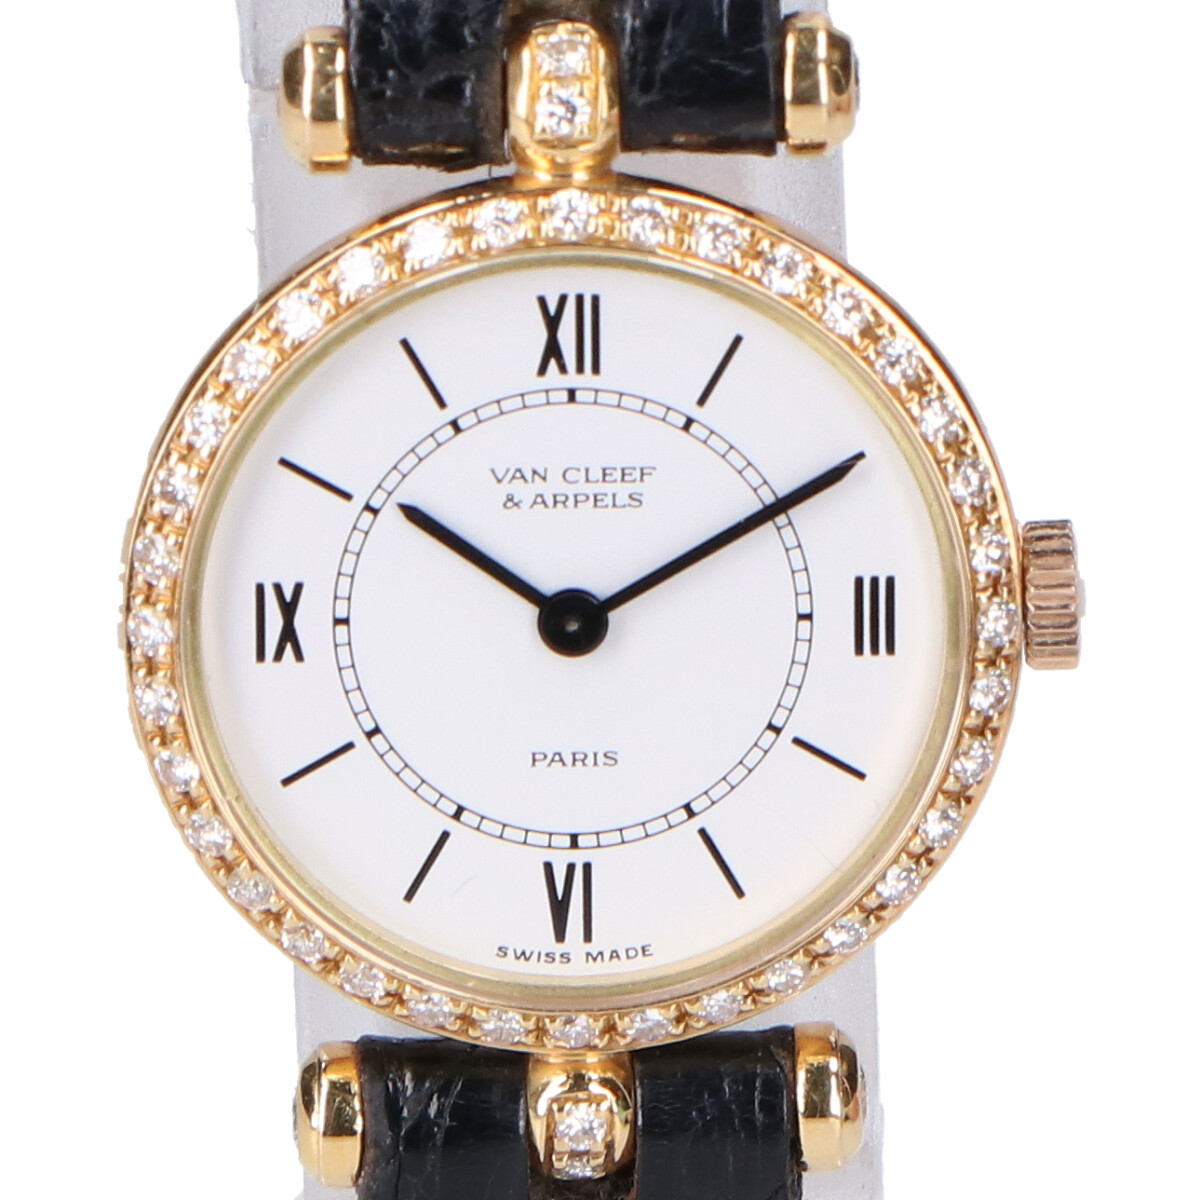 ヴァンクリーフ&アーペルの18901B1 K18YG クラシック ラ・コレクション クォーツ腕時計の買取実績です。